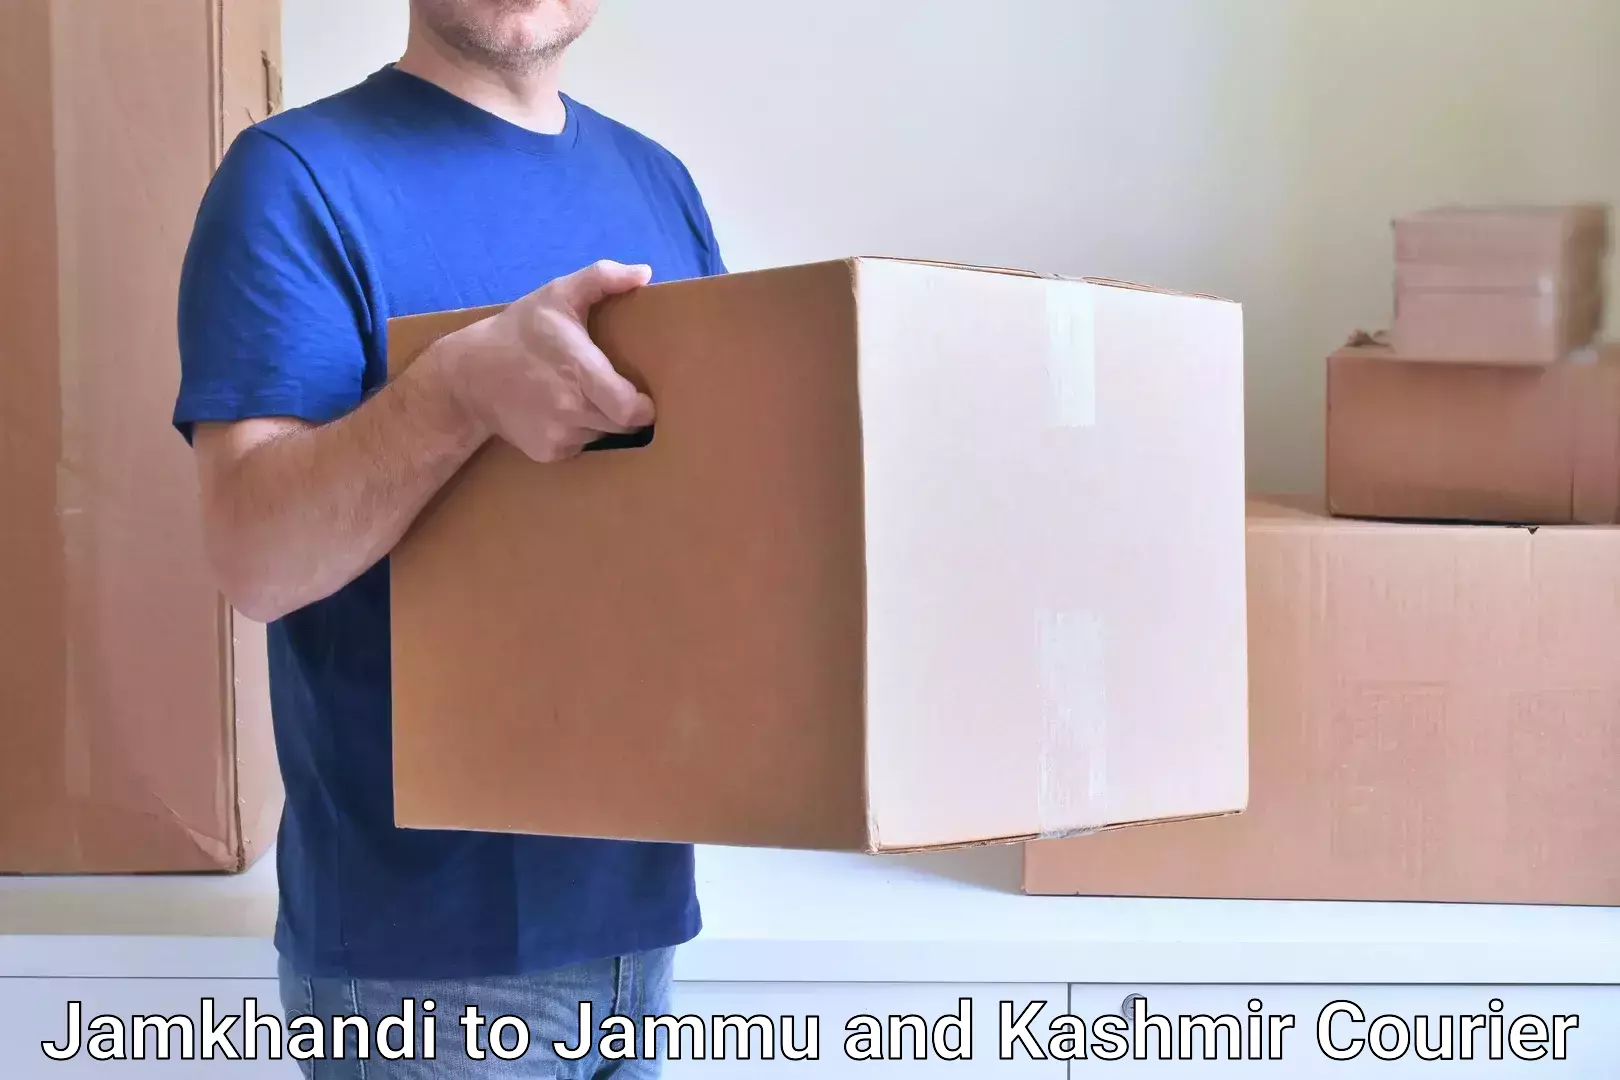 Sustainable shipping practices in Jamkhandi to Kishtwar